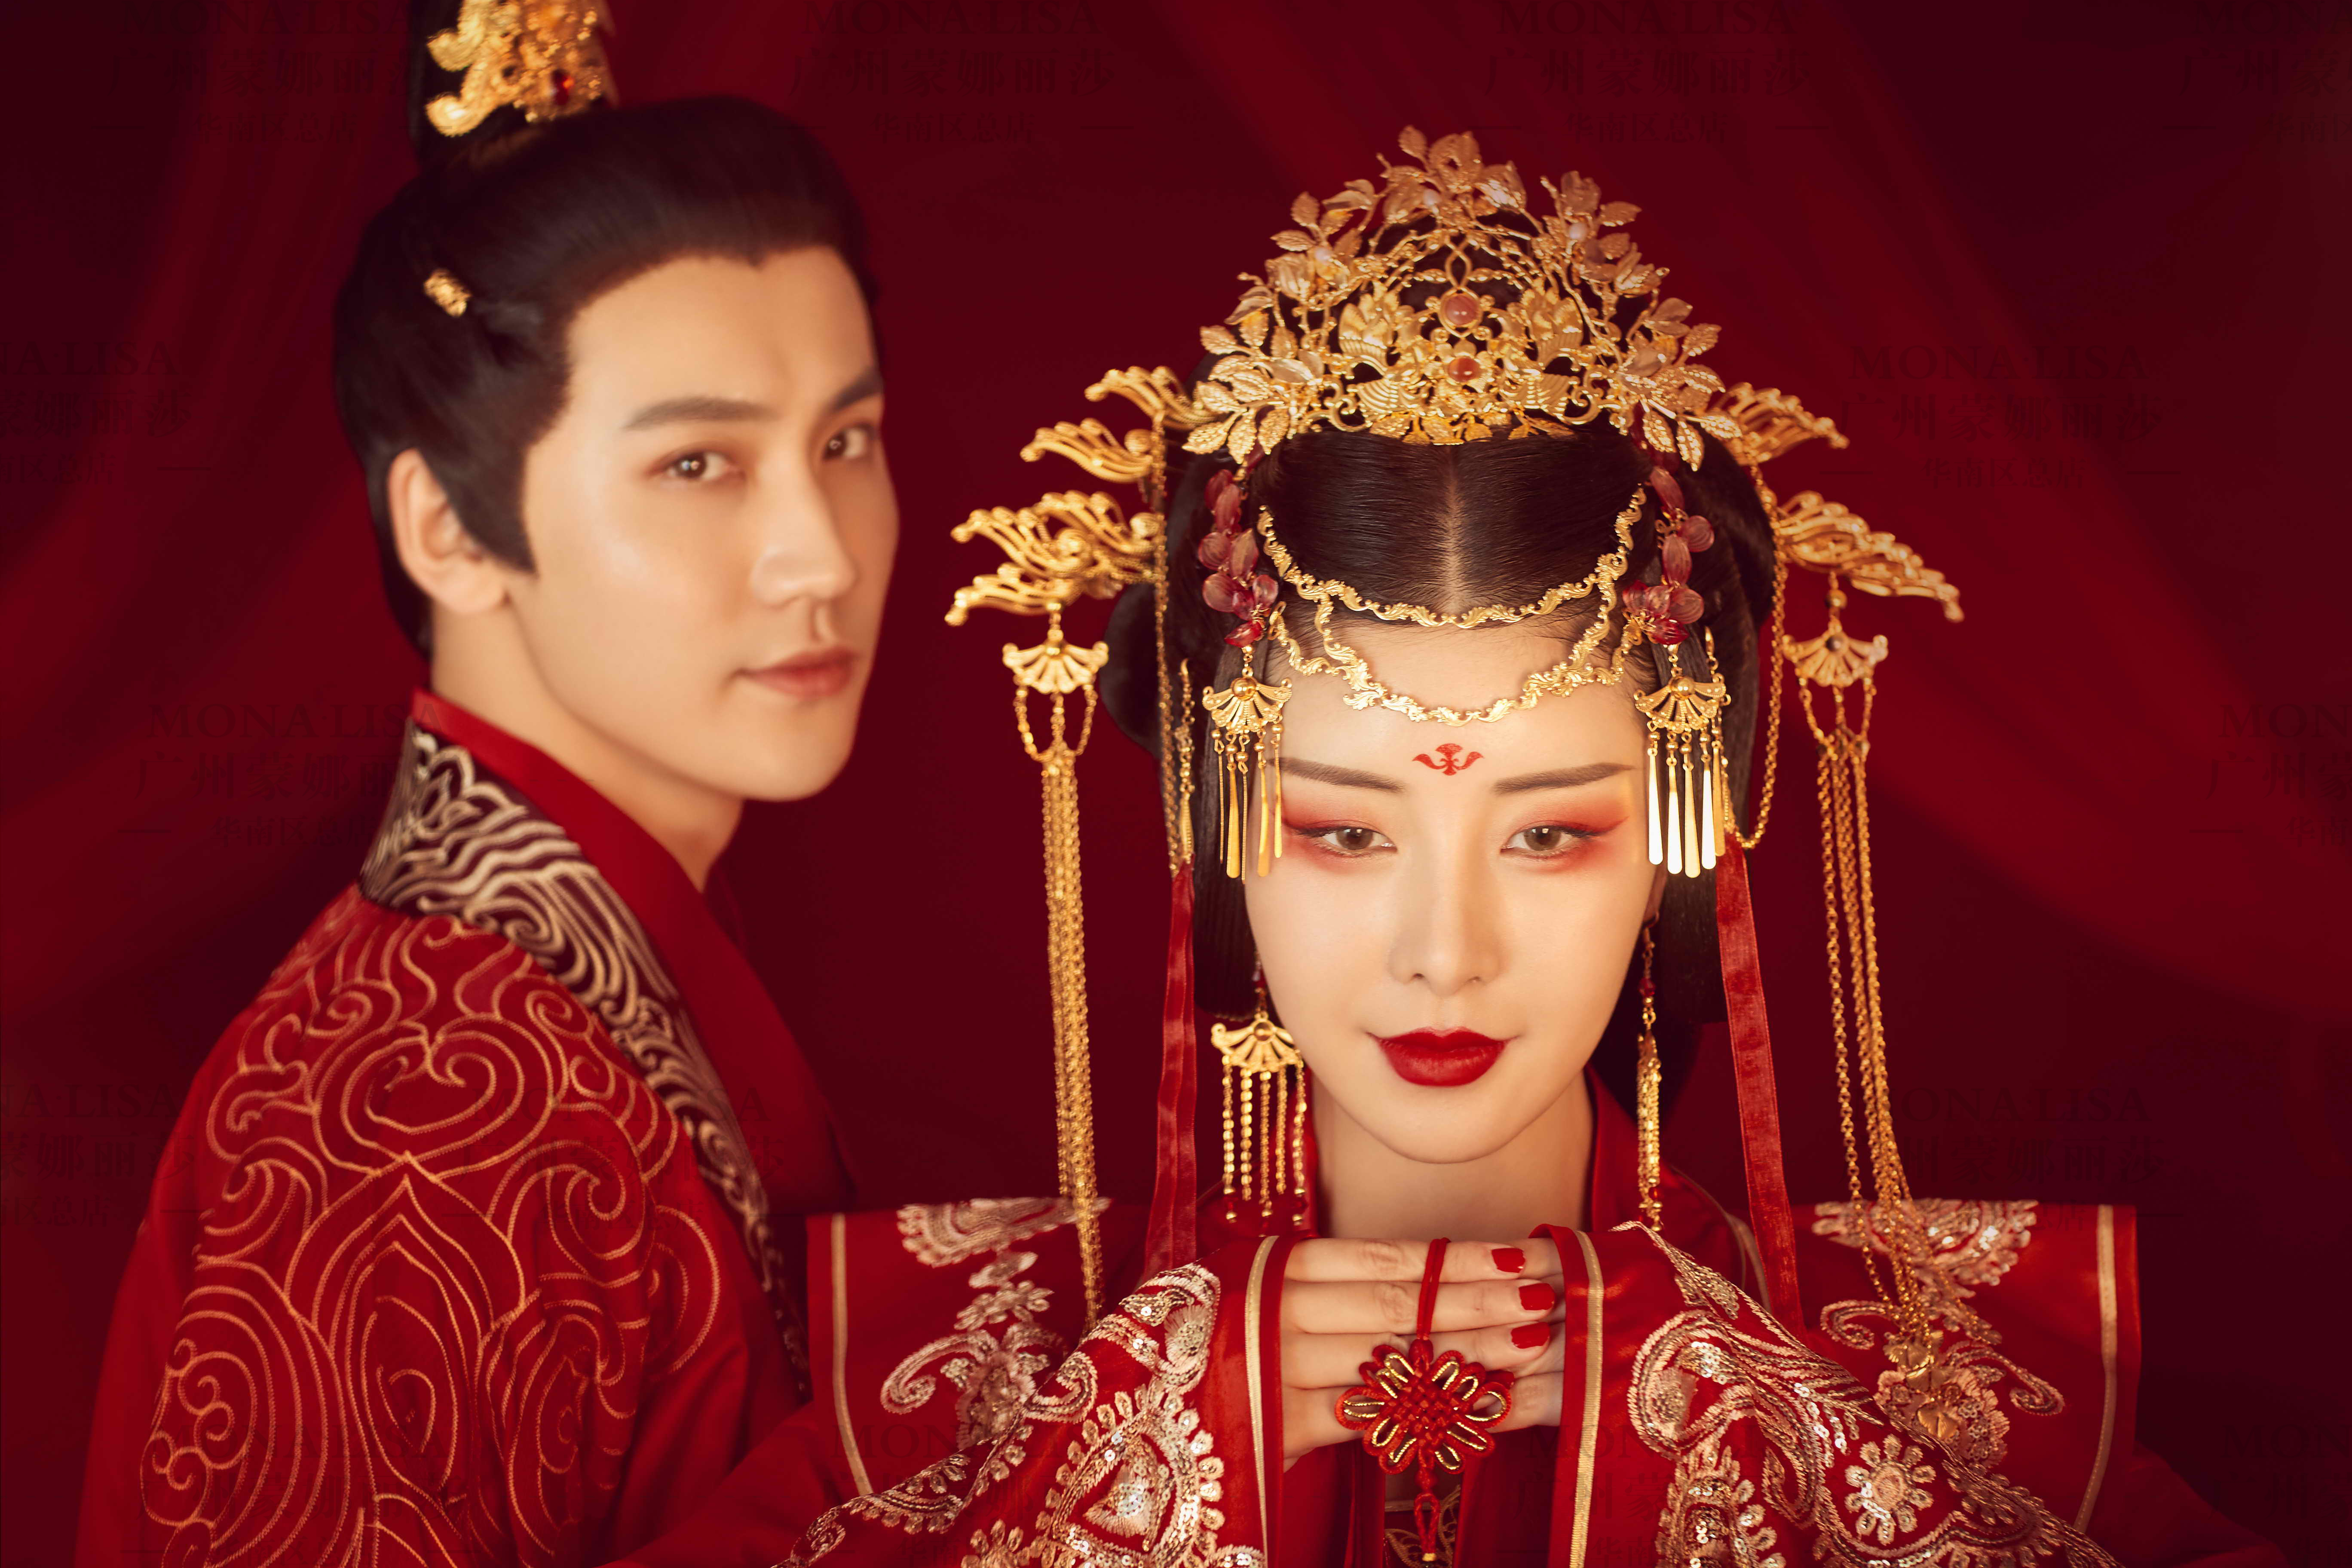 中式古风仪式感婚纱照醉婚宴,闹洞房